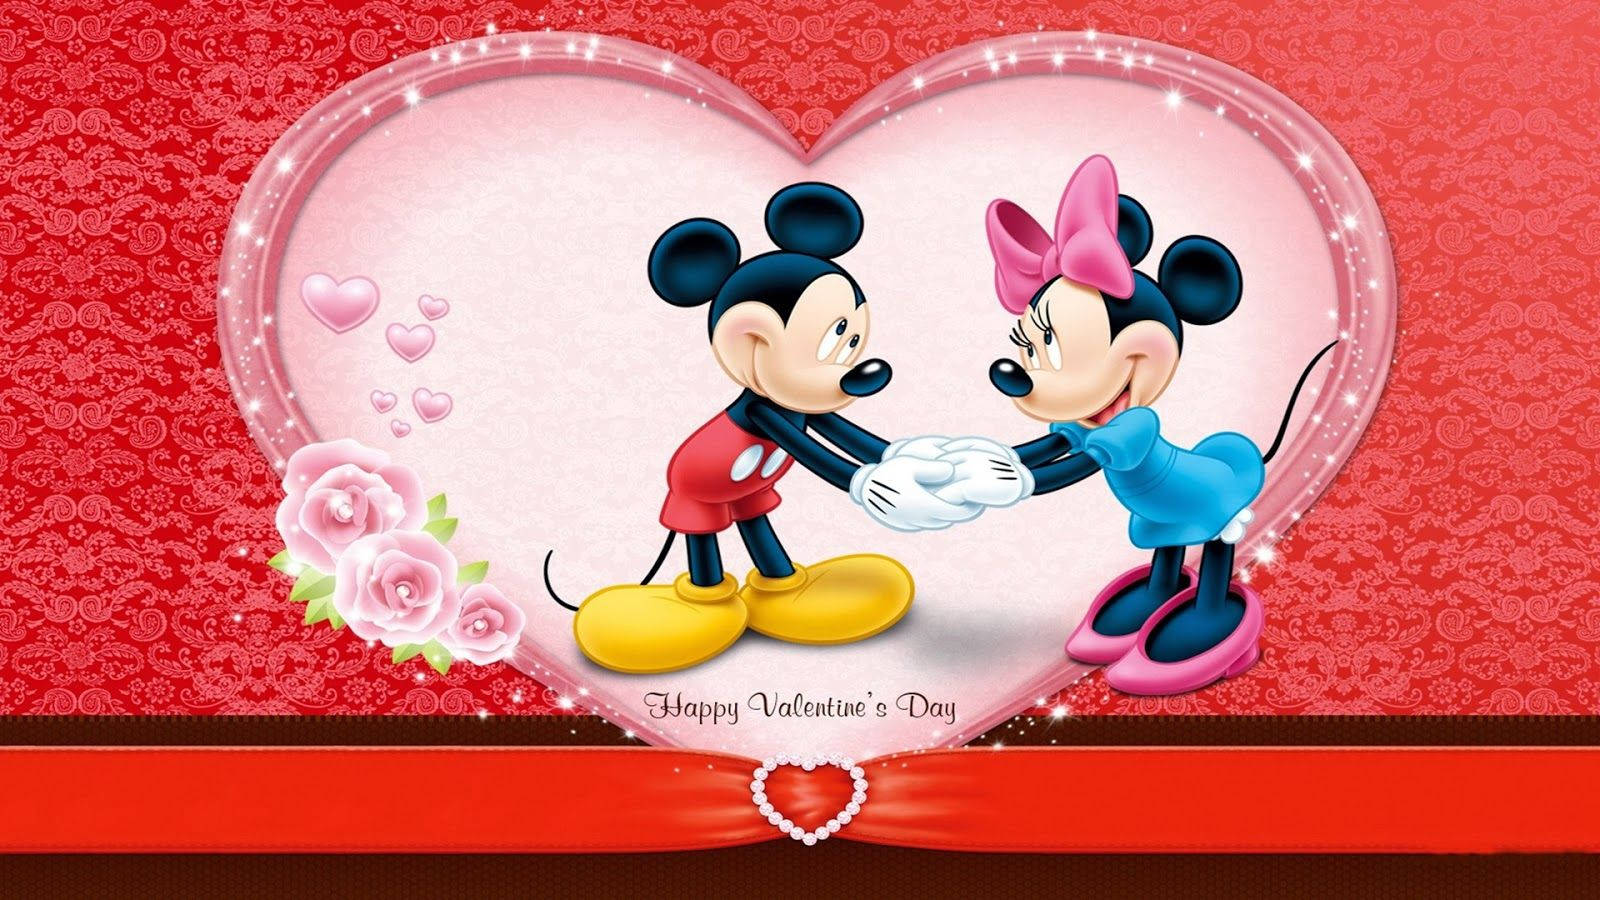 Lindomickey Mouse Del Día De San Valentín Fondo de pantalla